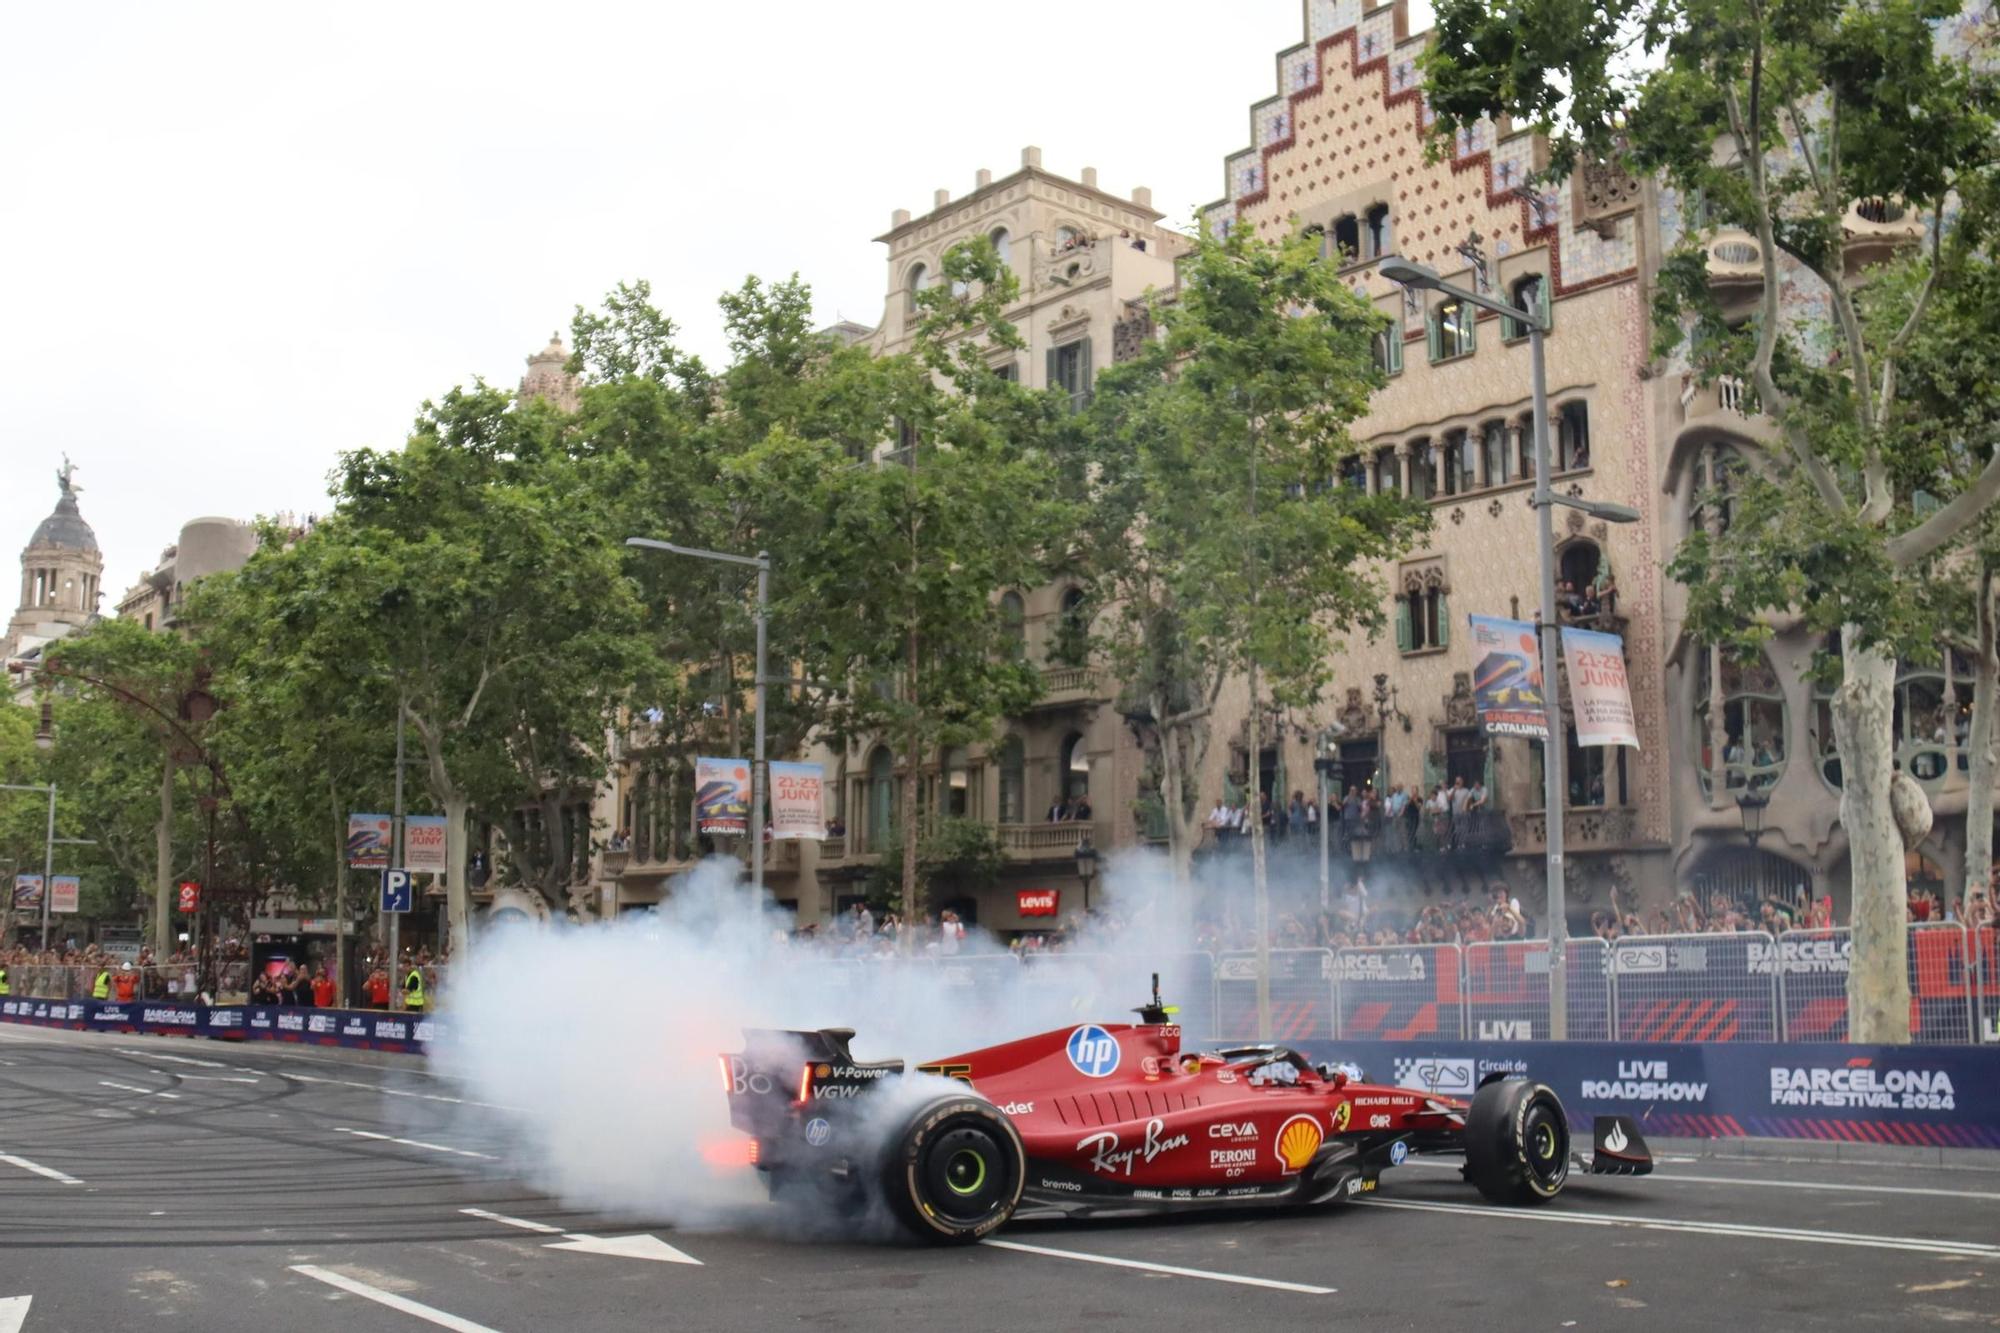 L'exhibició de Fórmula 1 pels carrers de Barcelona, en imatges